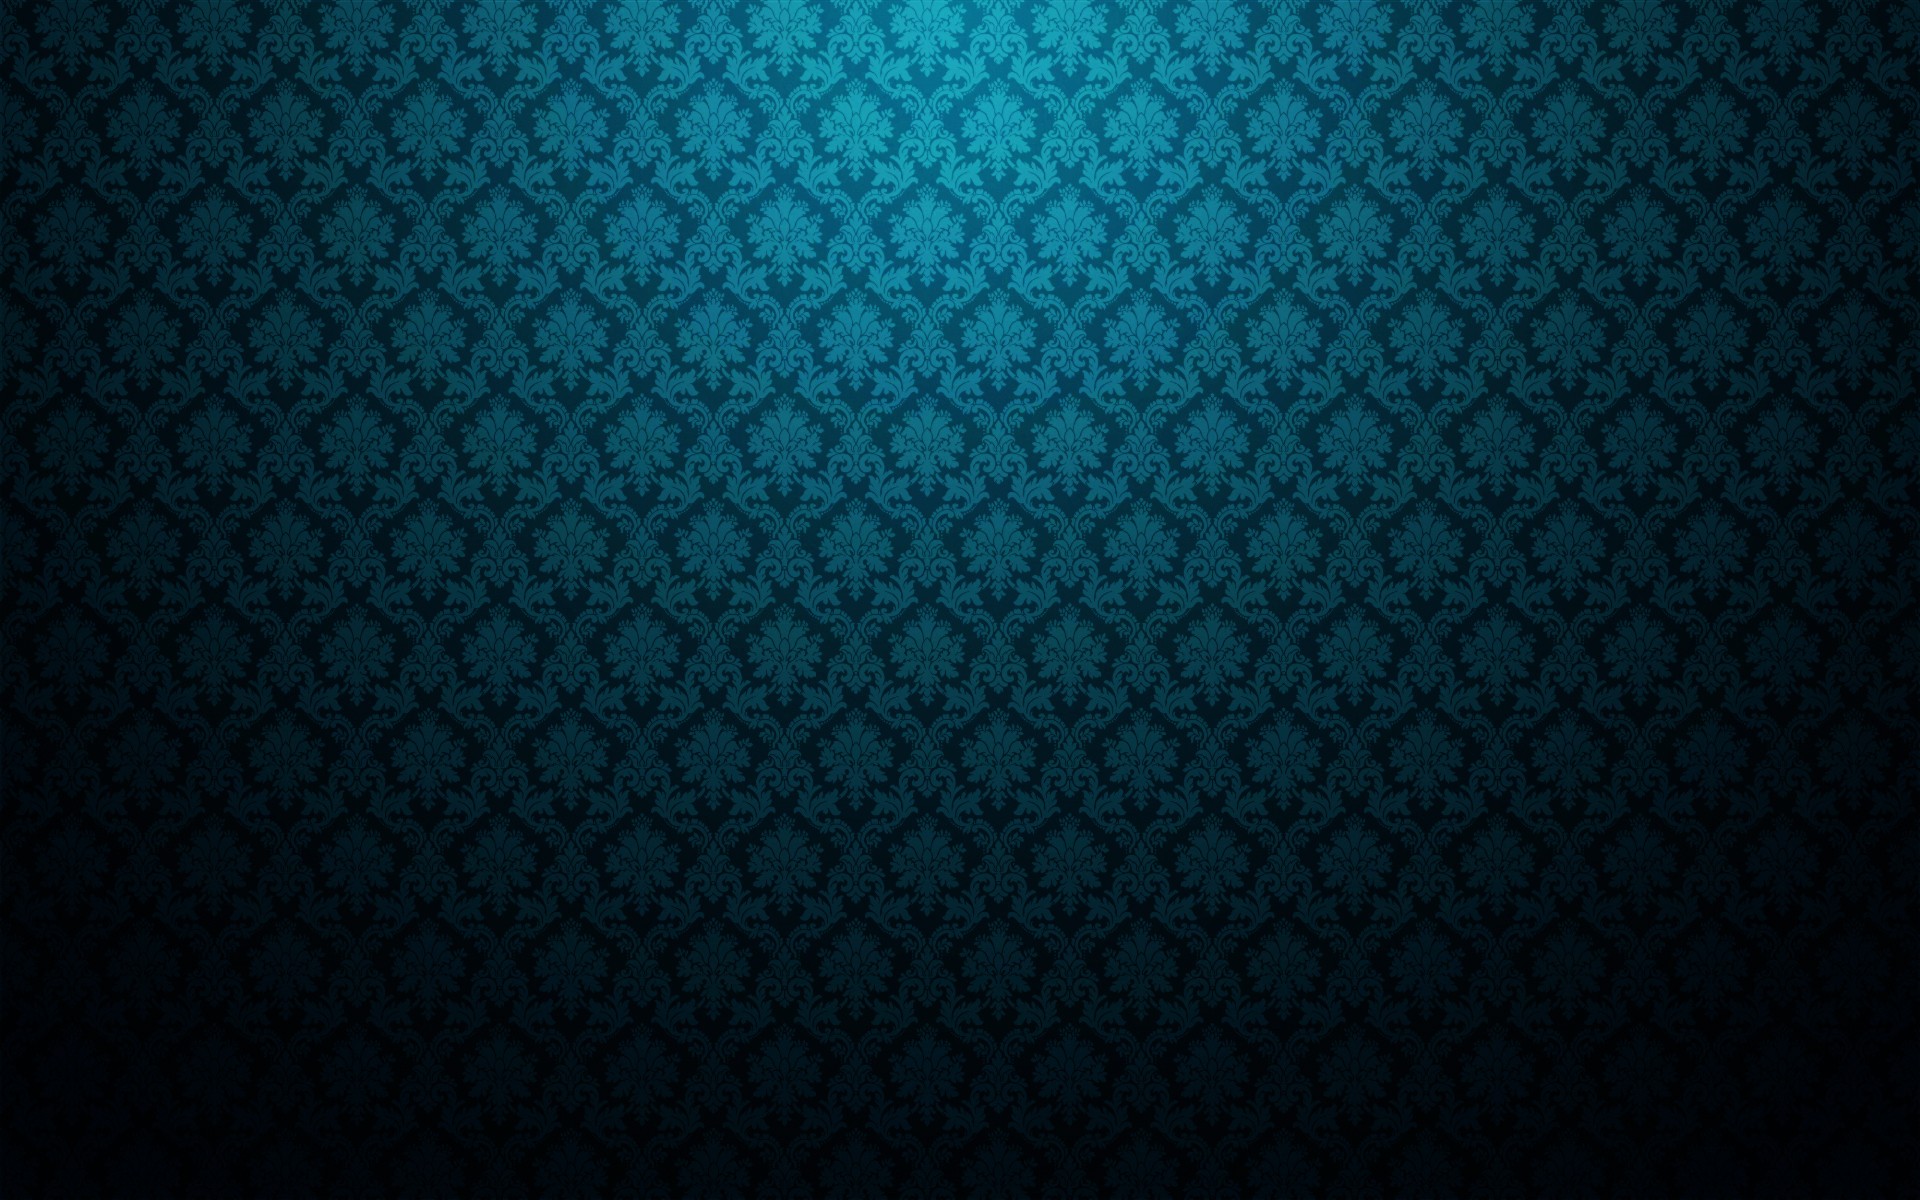 Abstract minimalistic pattern patterns damask wallpaper